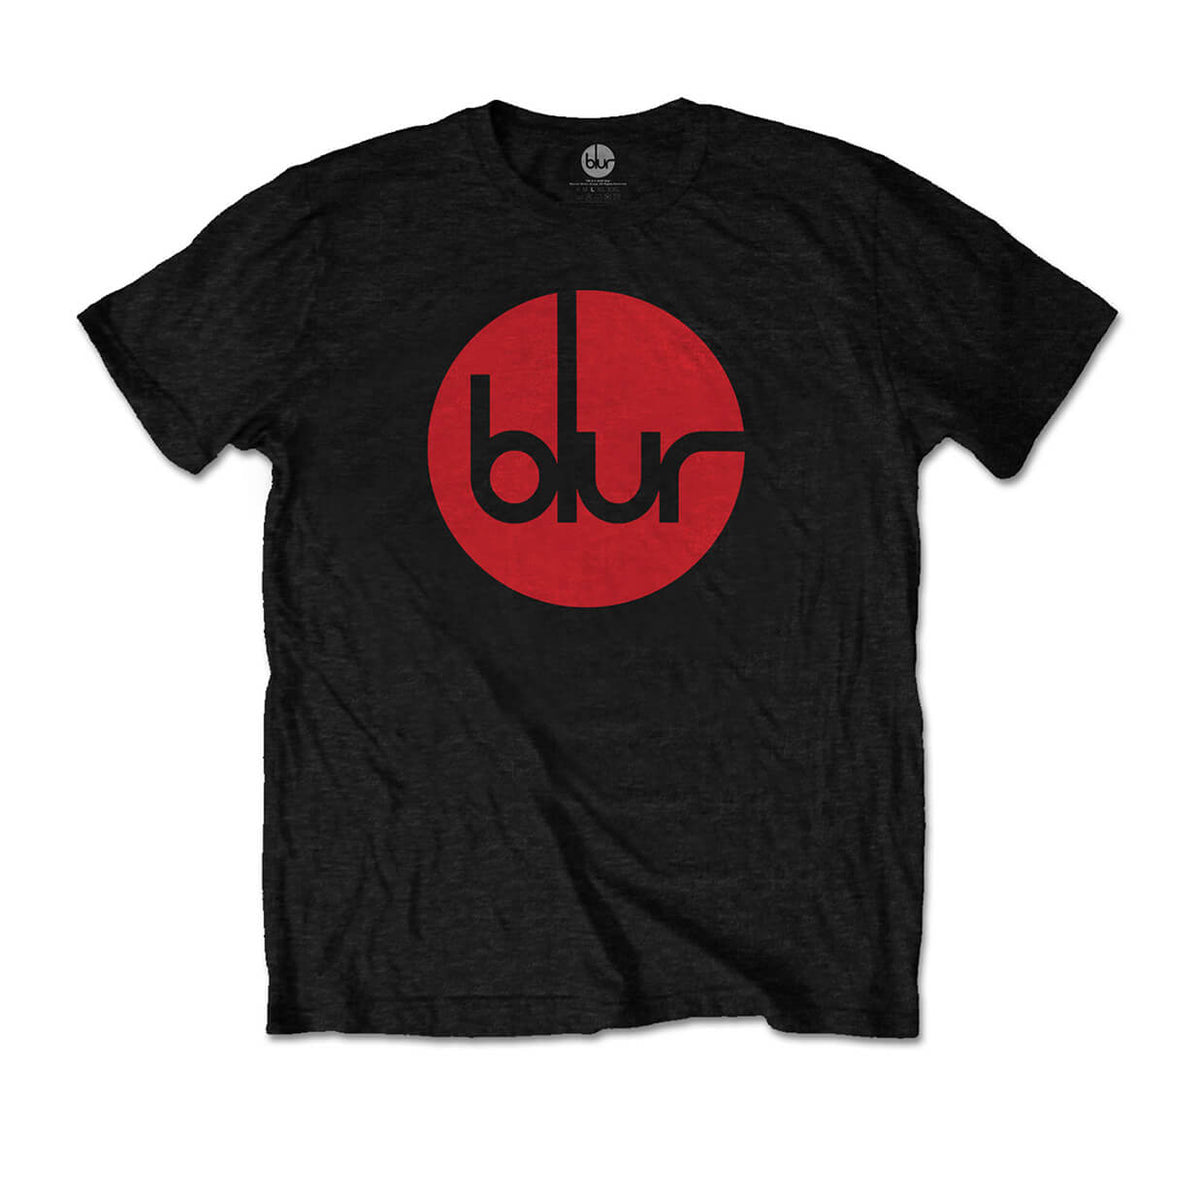 Vinyl - Blur : Circle Logo - T-Shirt - The Record Hub